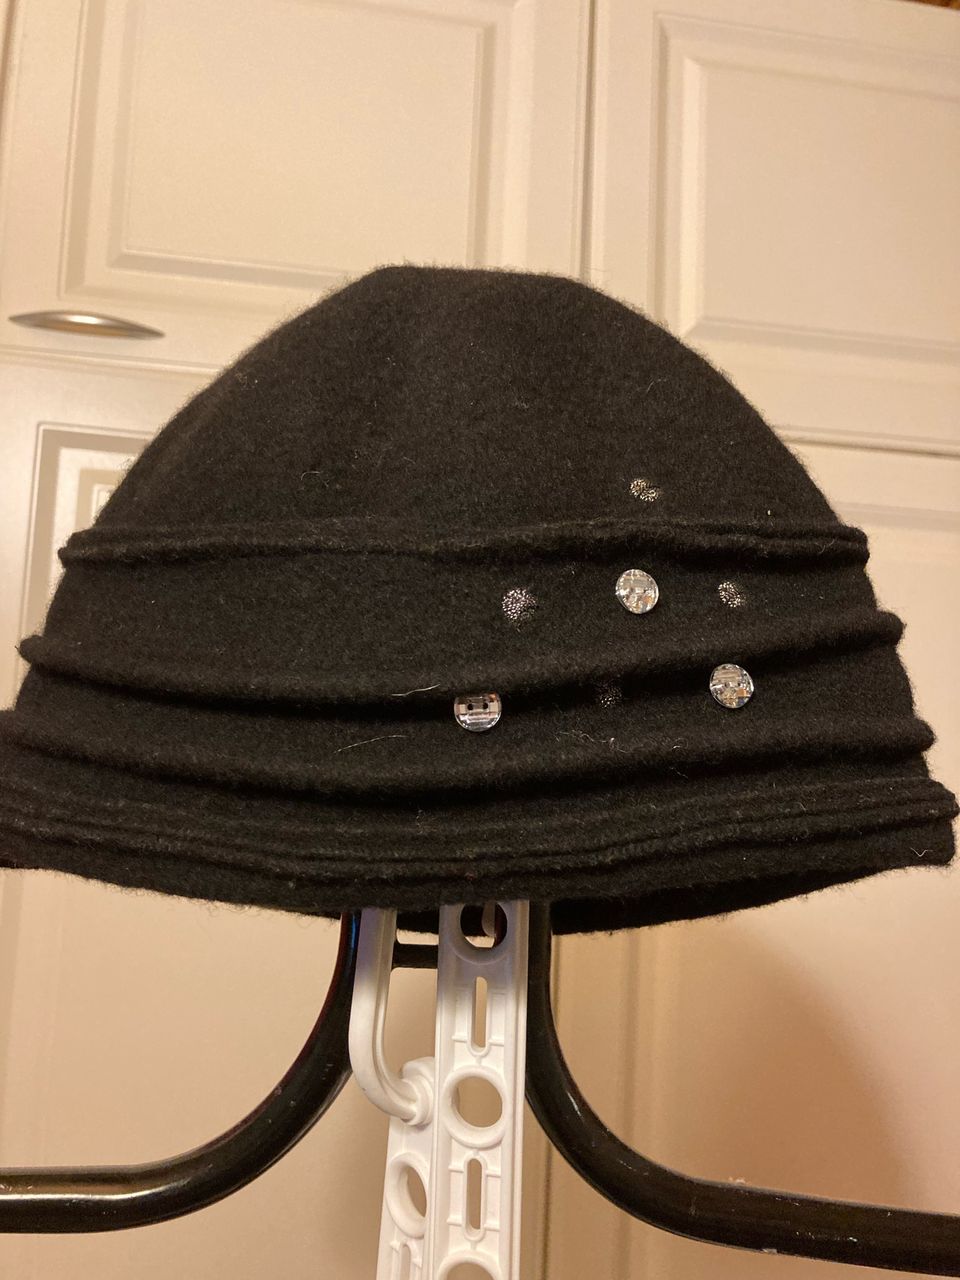 Musta hattu villaa 55-56